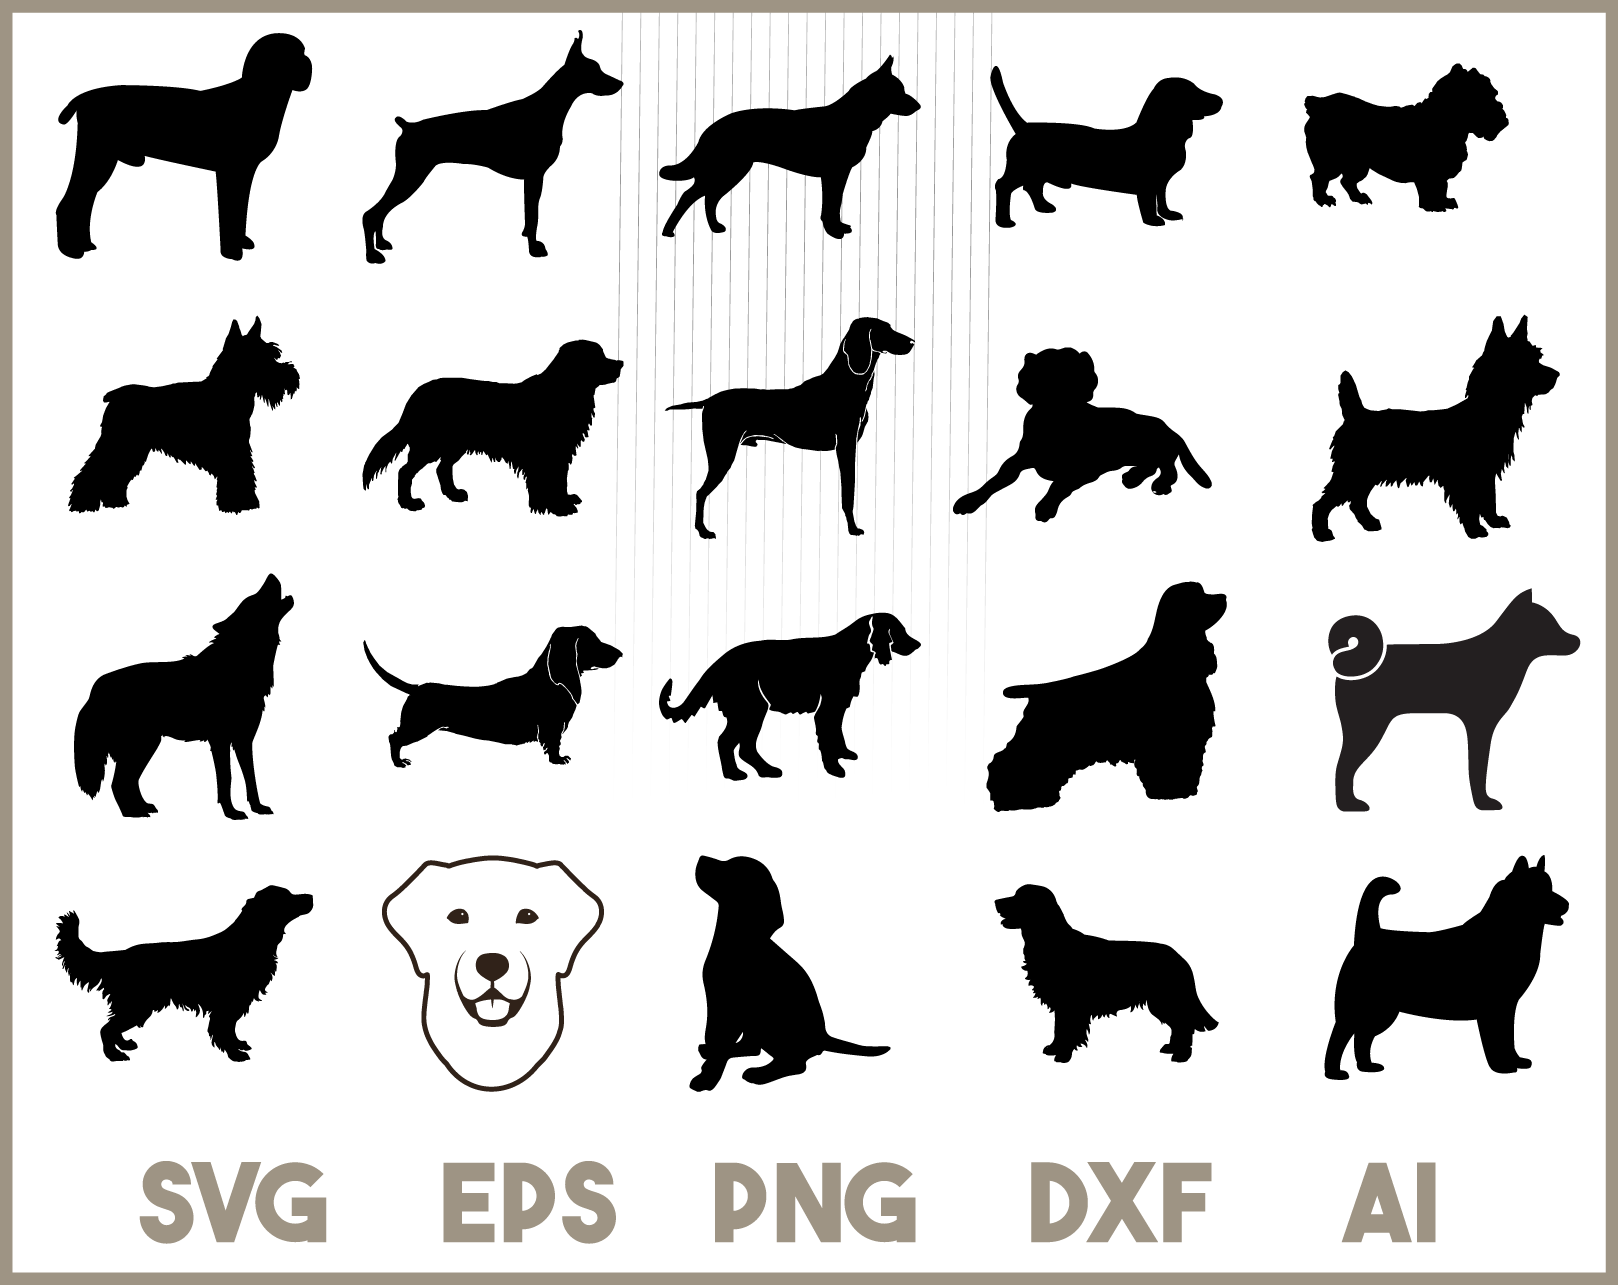 Download Dog Svg Bundle 20 Dog Silhouettes Dog Clipart Shapes Dog Breeds Design Shopy